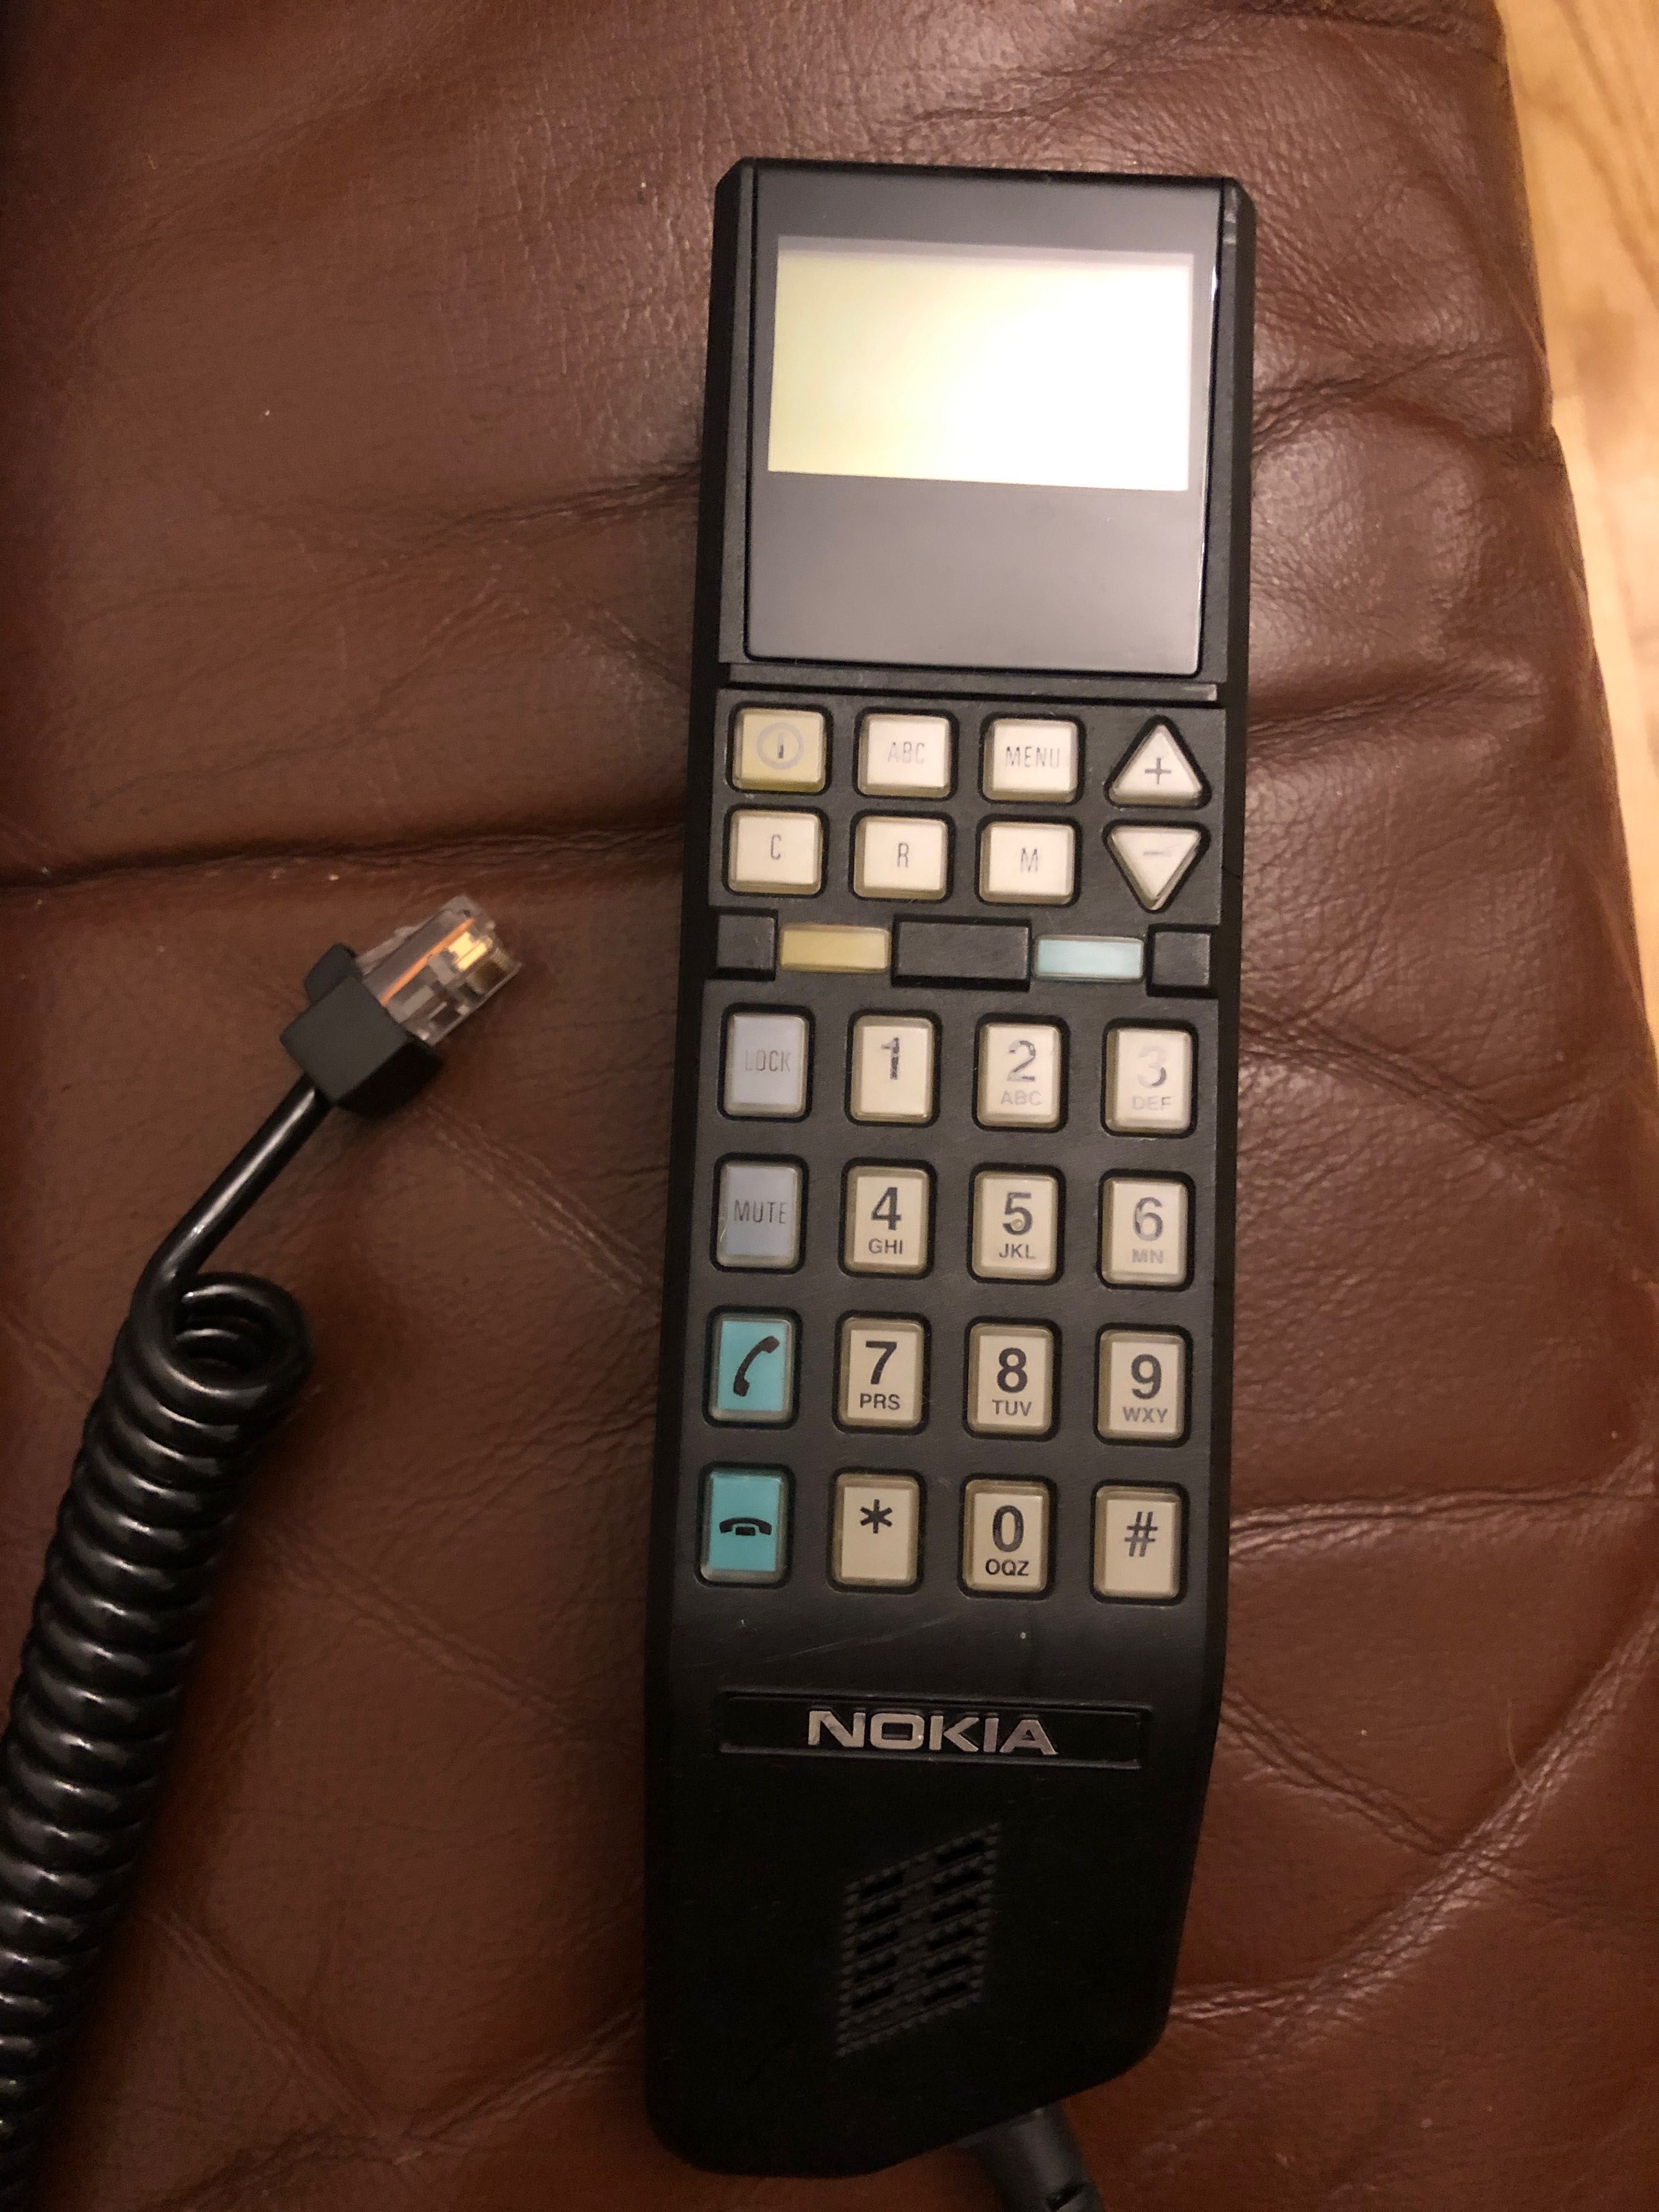 Sluchawka od telefonu komorkowego TMF -4SP   Nokia Nowa